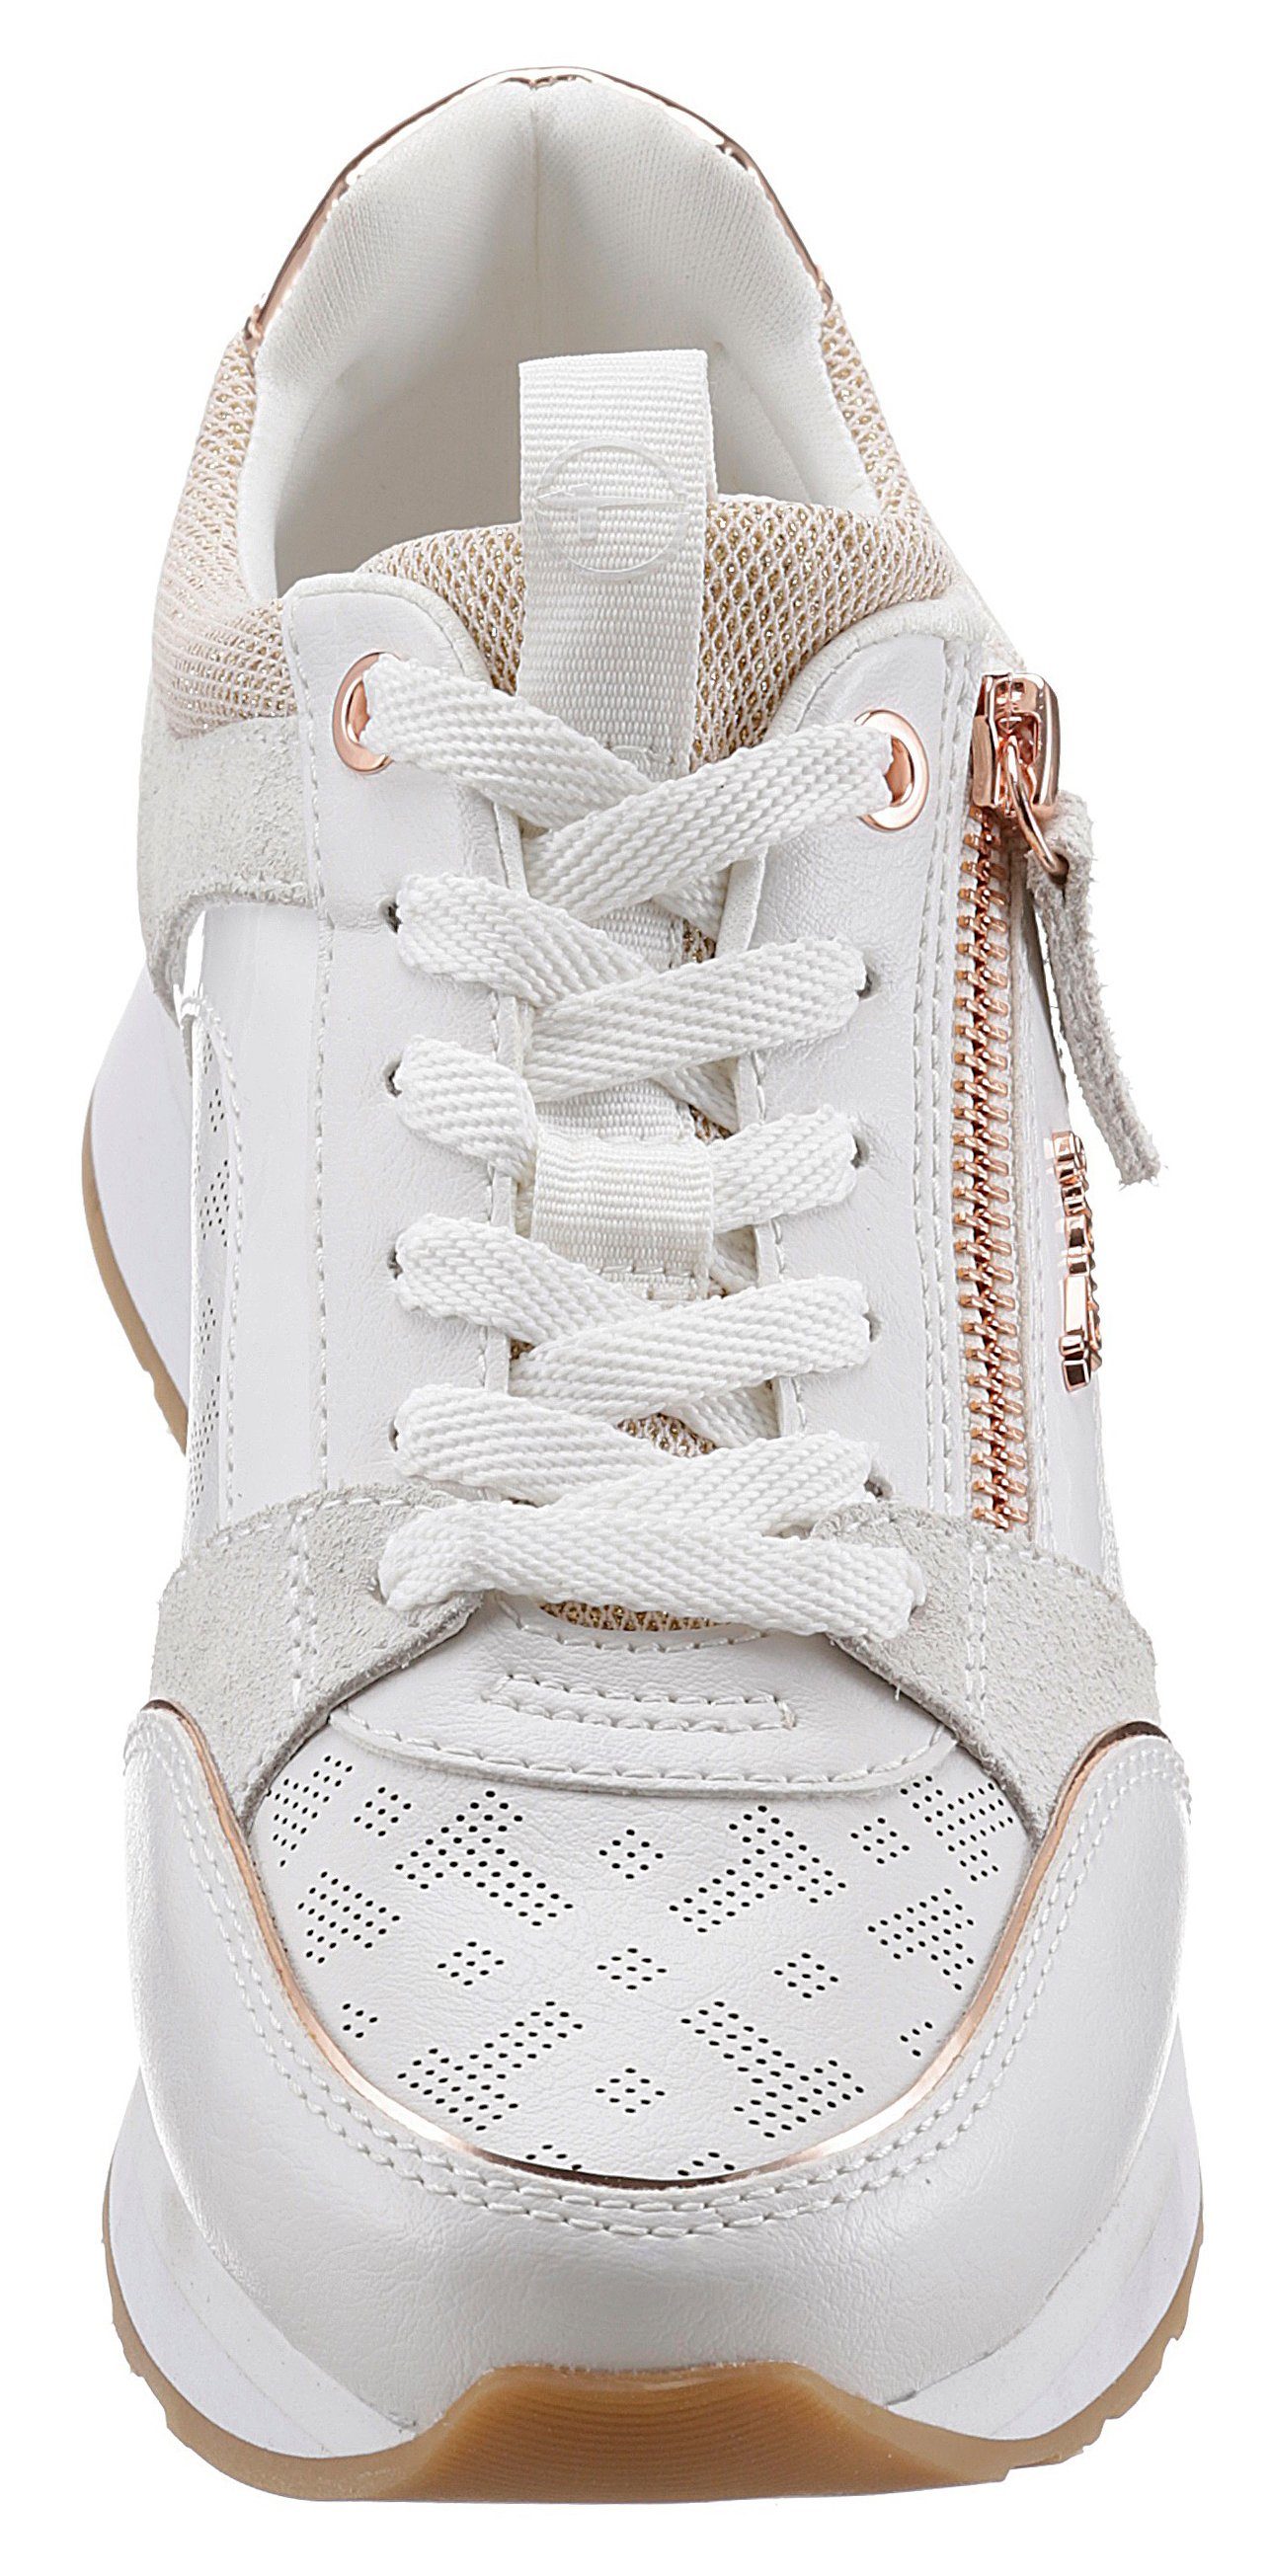 weiß-roségoldfarben praktischem Tamaris Reißverschluss Sneaker mit